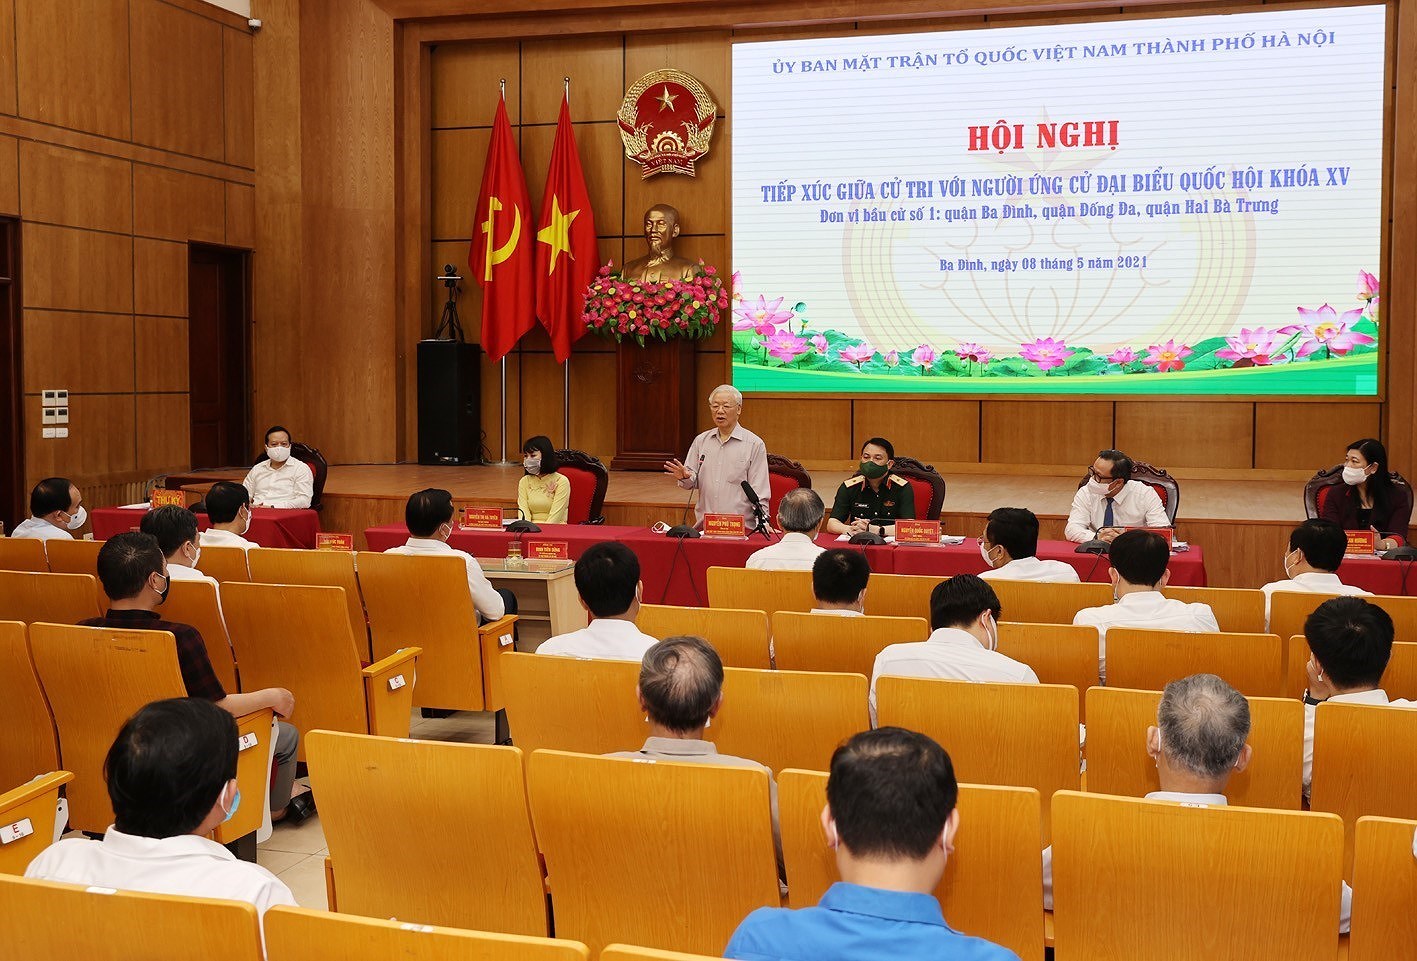 Le secretaire general du Parti Nguyen Phu Trong rencontre des electeurs a Hanoi hinh anh 2